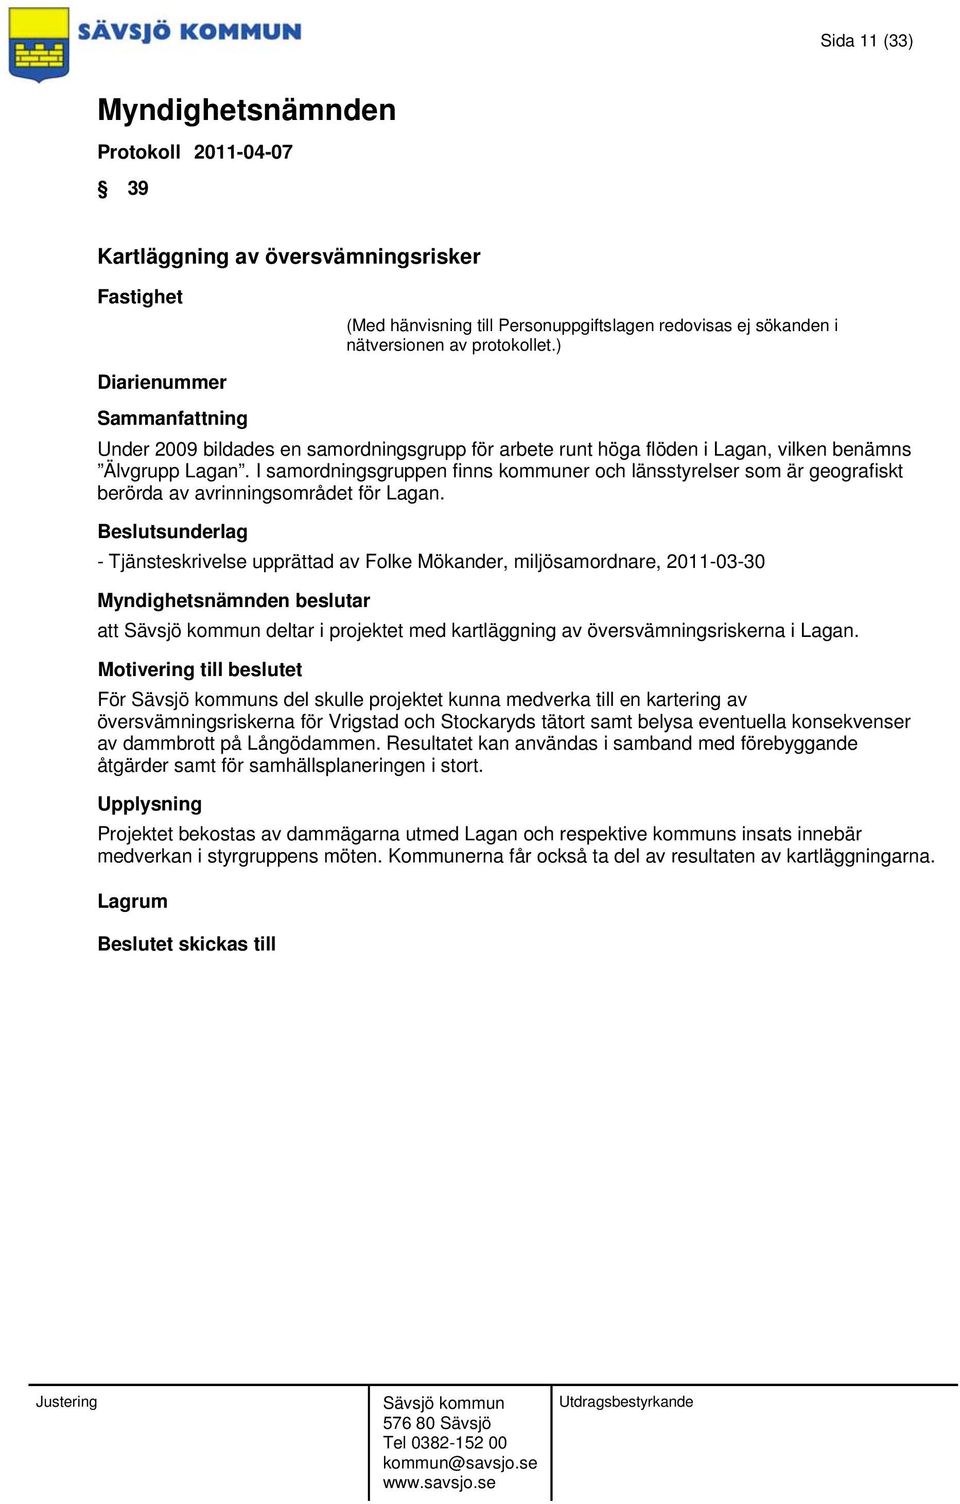 - Tjänsteskrivelse upprättad av Folke Mökander, miljösamordnare, 2011-03-30 beslutar att deltar i projektet med kartläggning av översvämningsriskerna i Lagan.